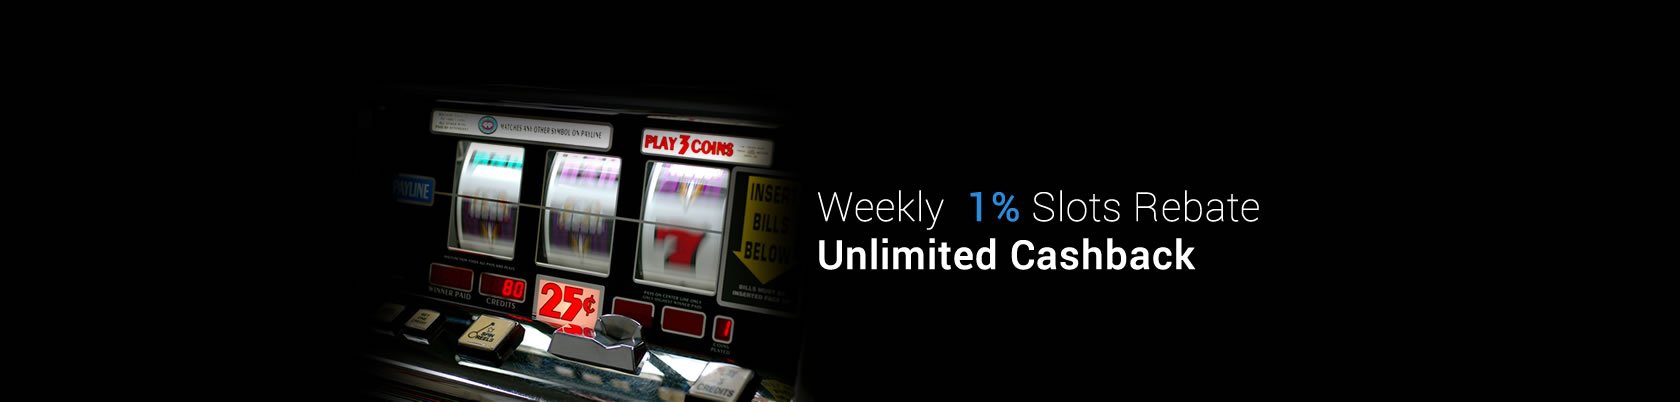 9Club Weekly 1% Slots Rebate Unlimited Cashback